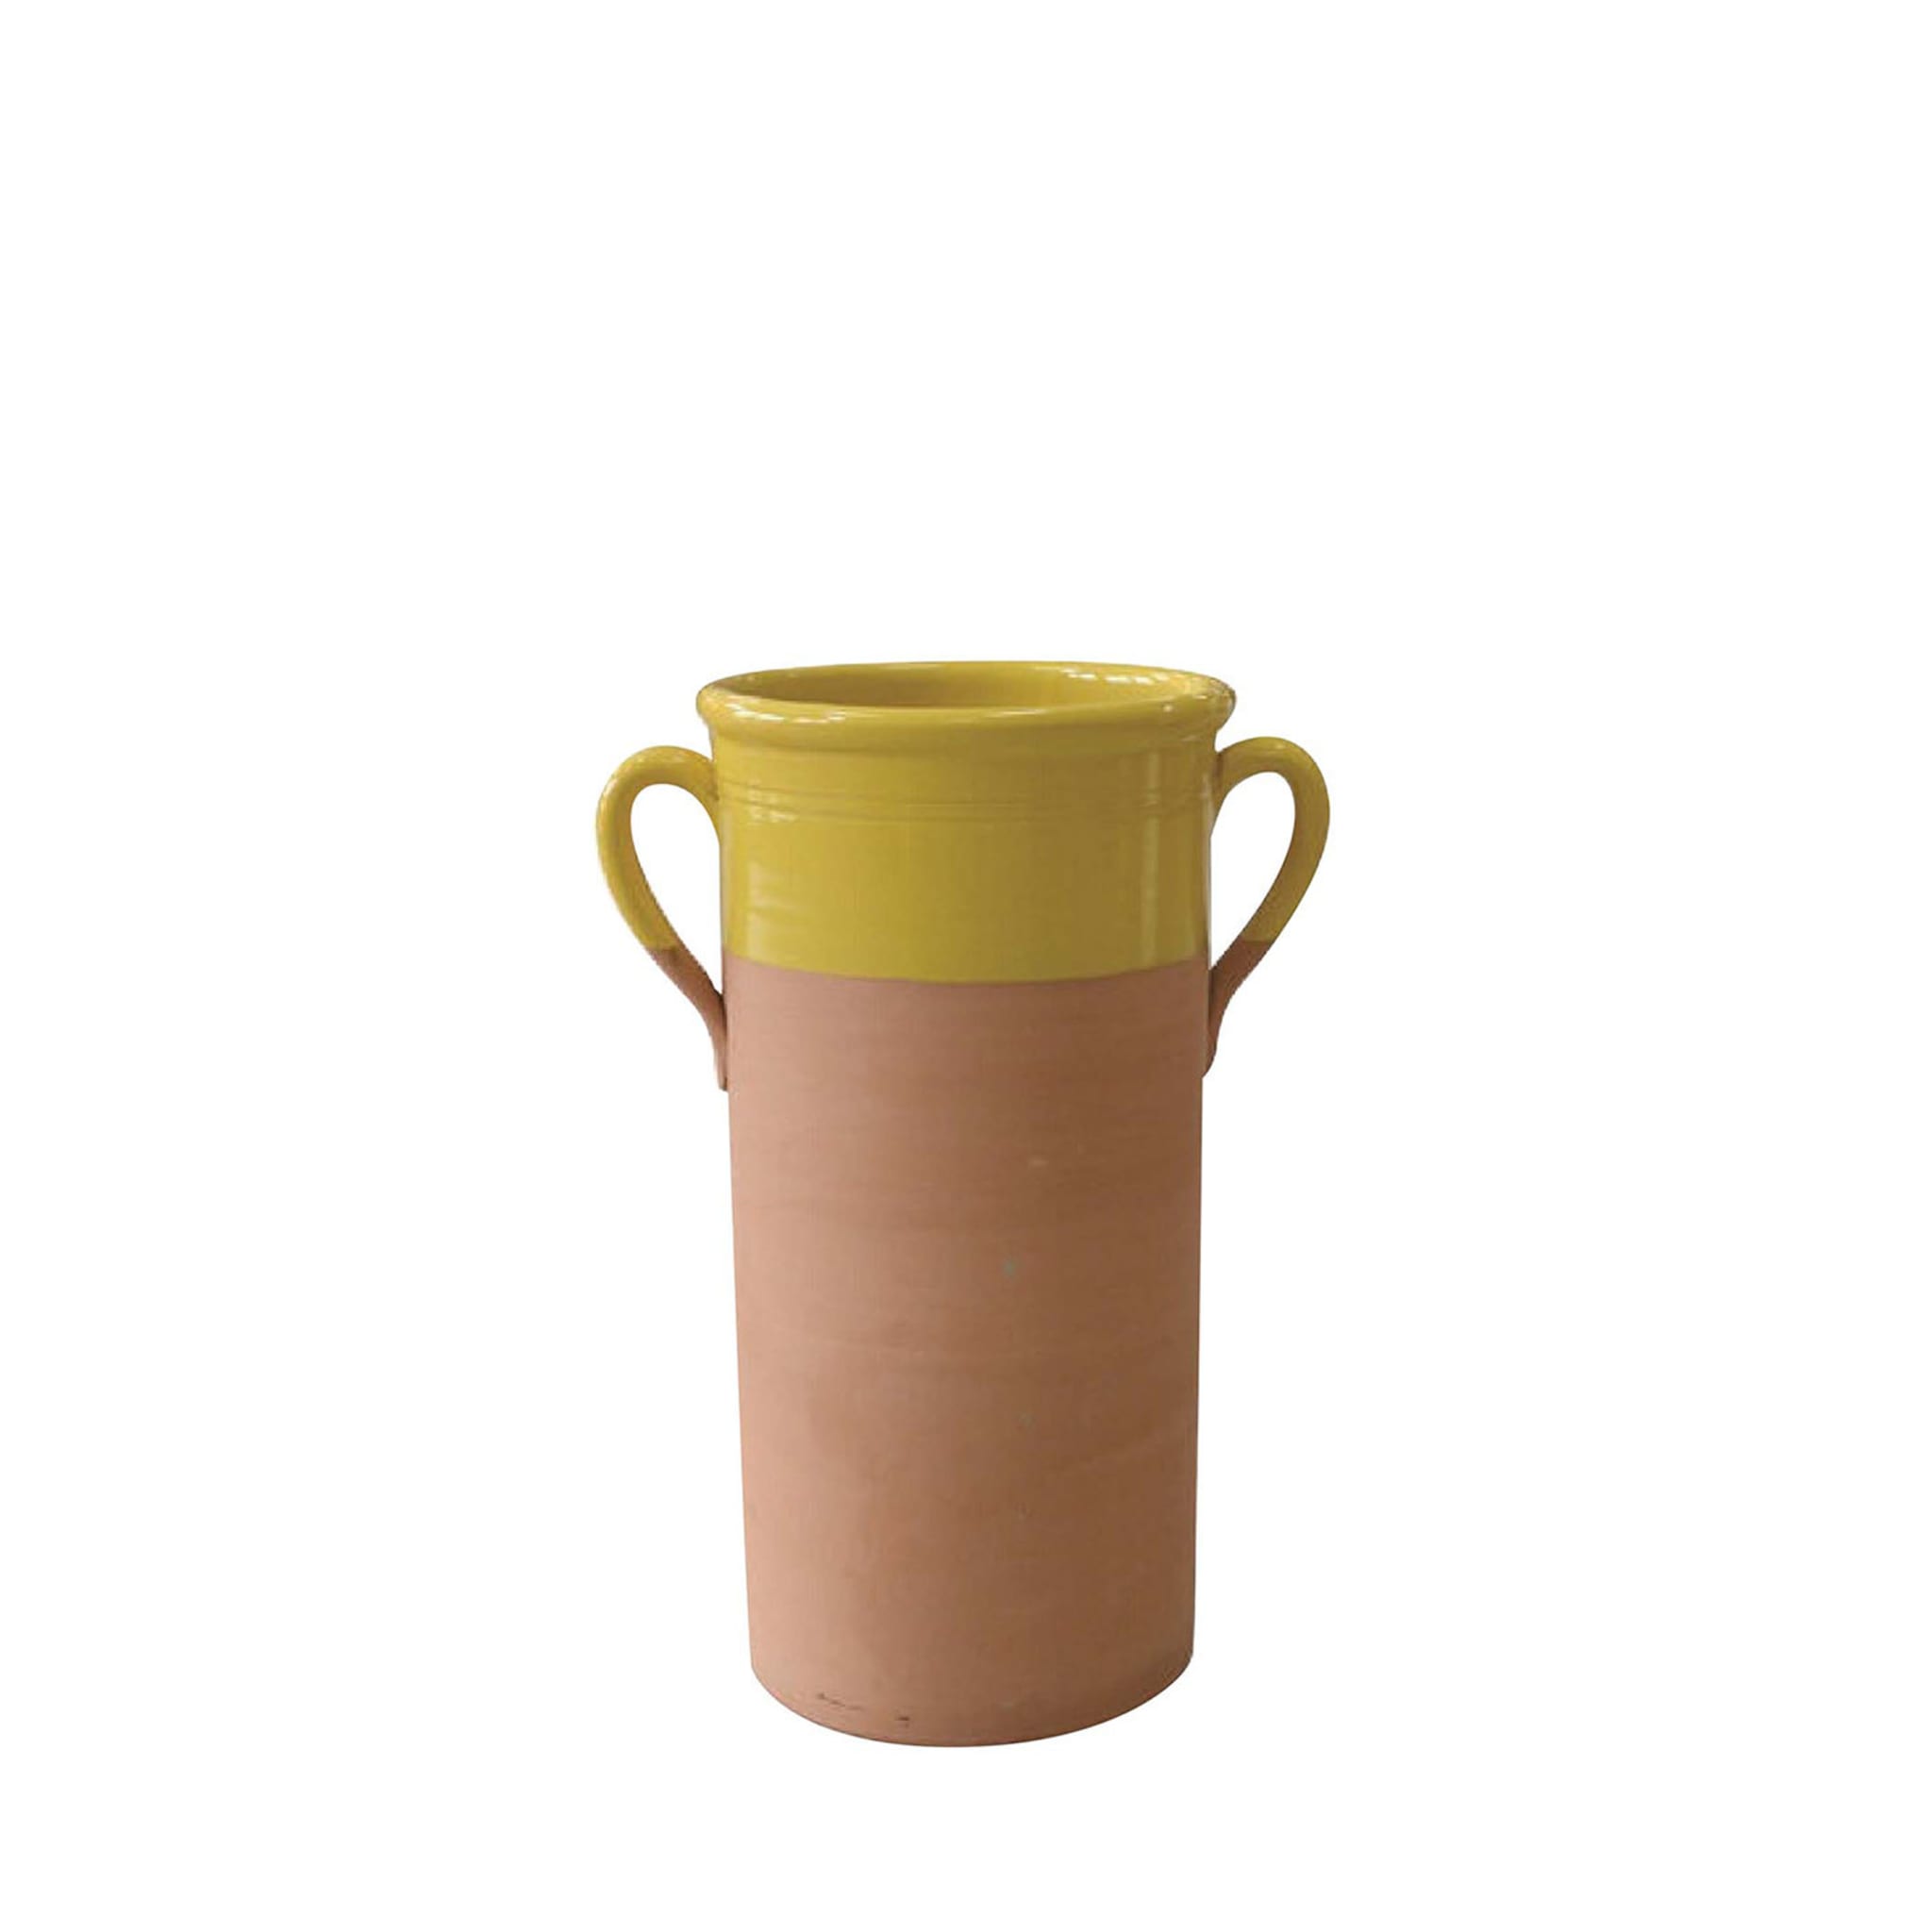 Vaso cilindrico giallo di piccole dimensioni con manici - Vista principale